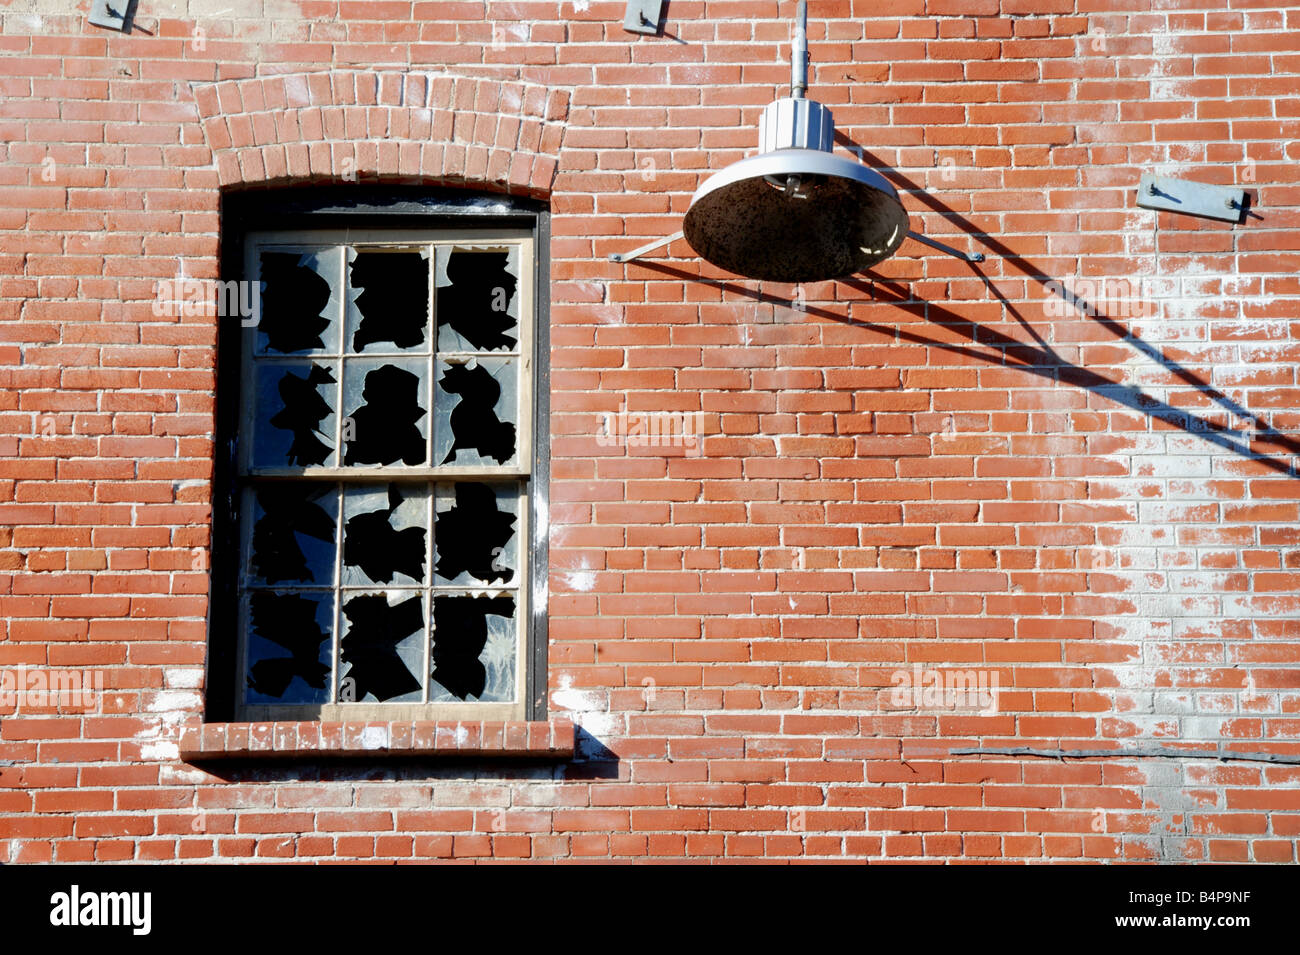 Brisé des fenêtres et une lampe dans l'historique quartier briqueterie de Toronto Banque D'Images